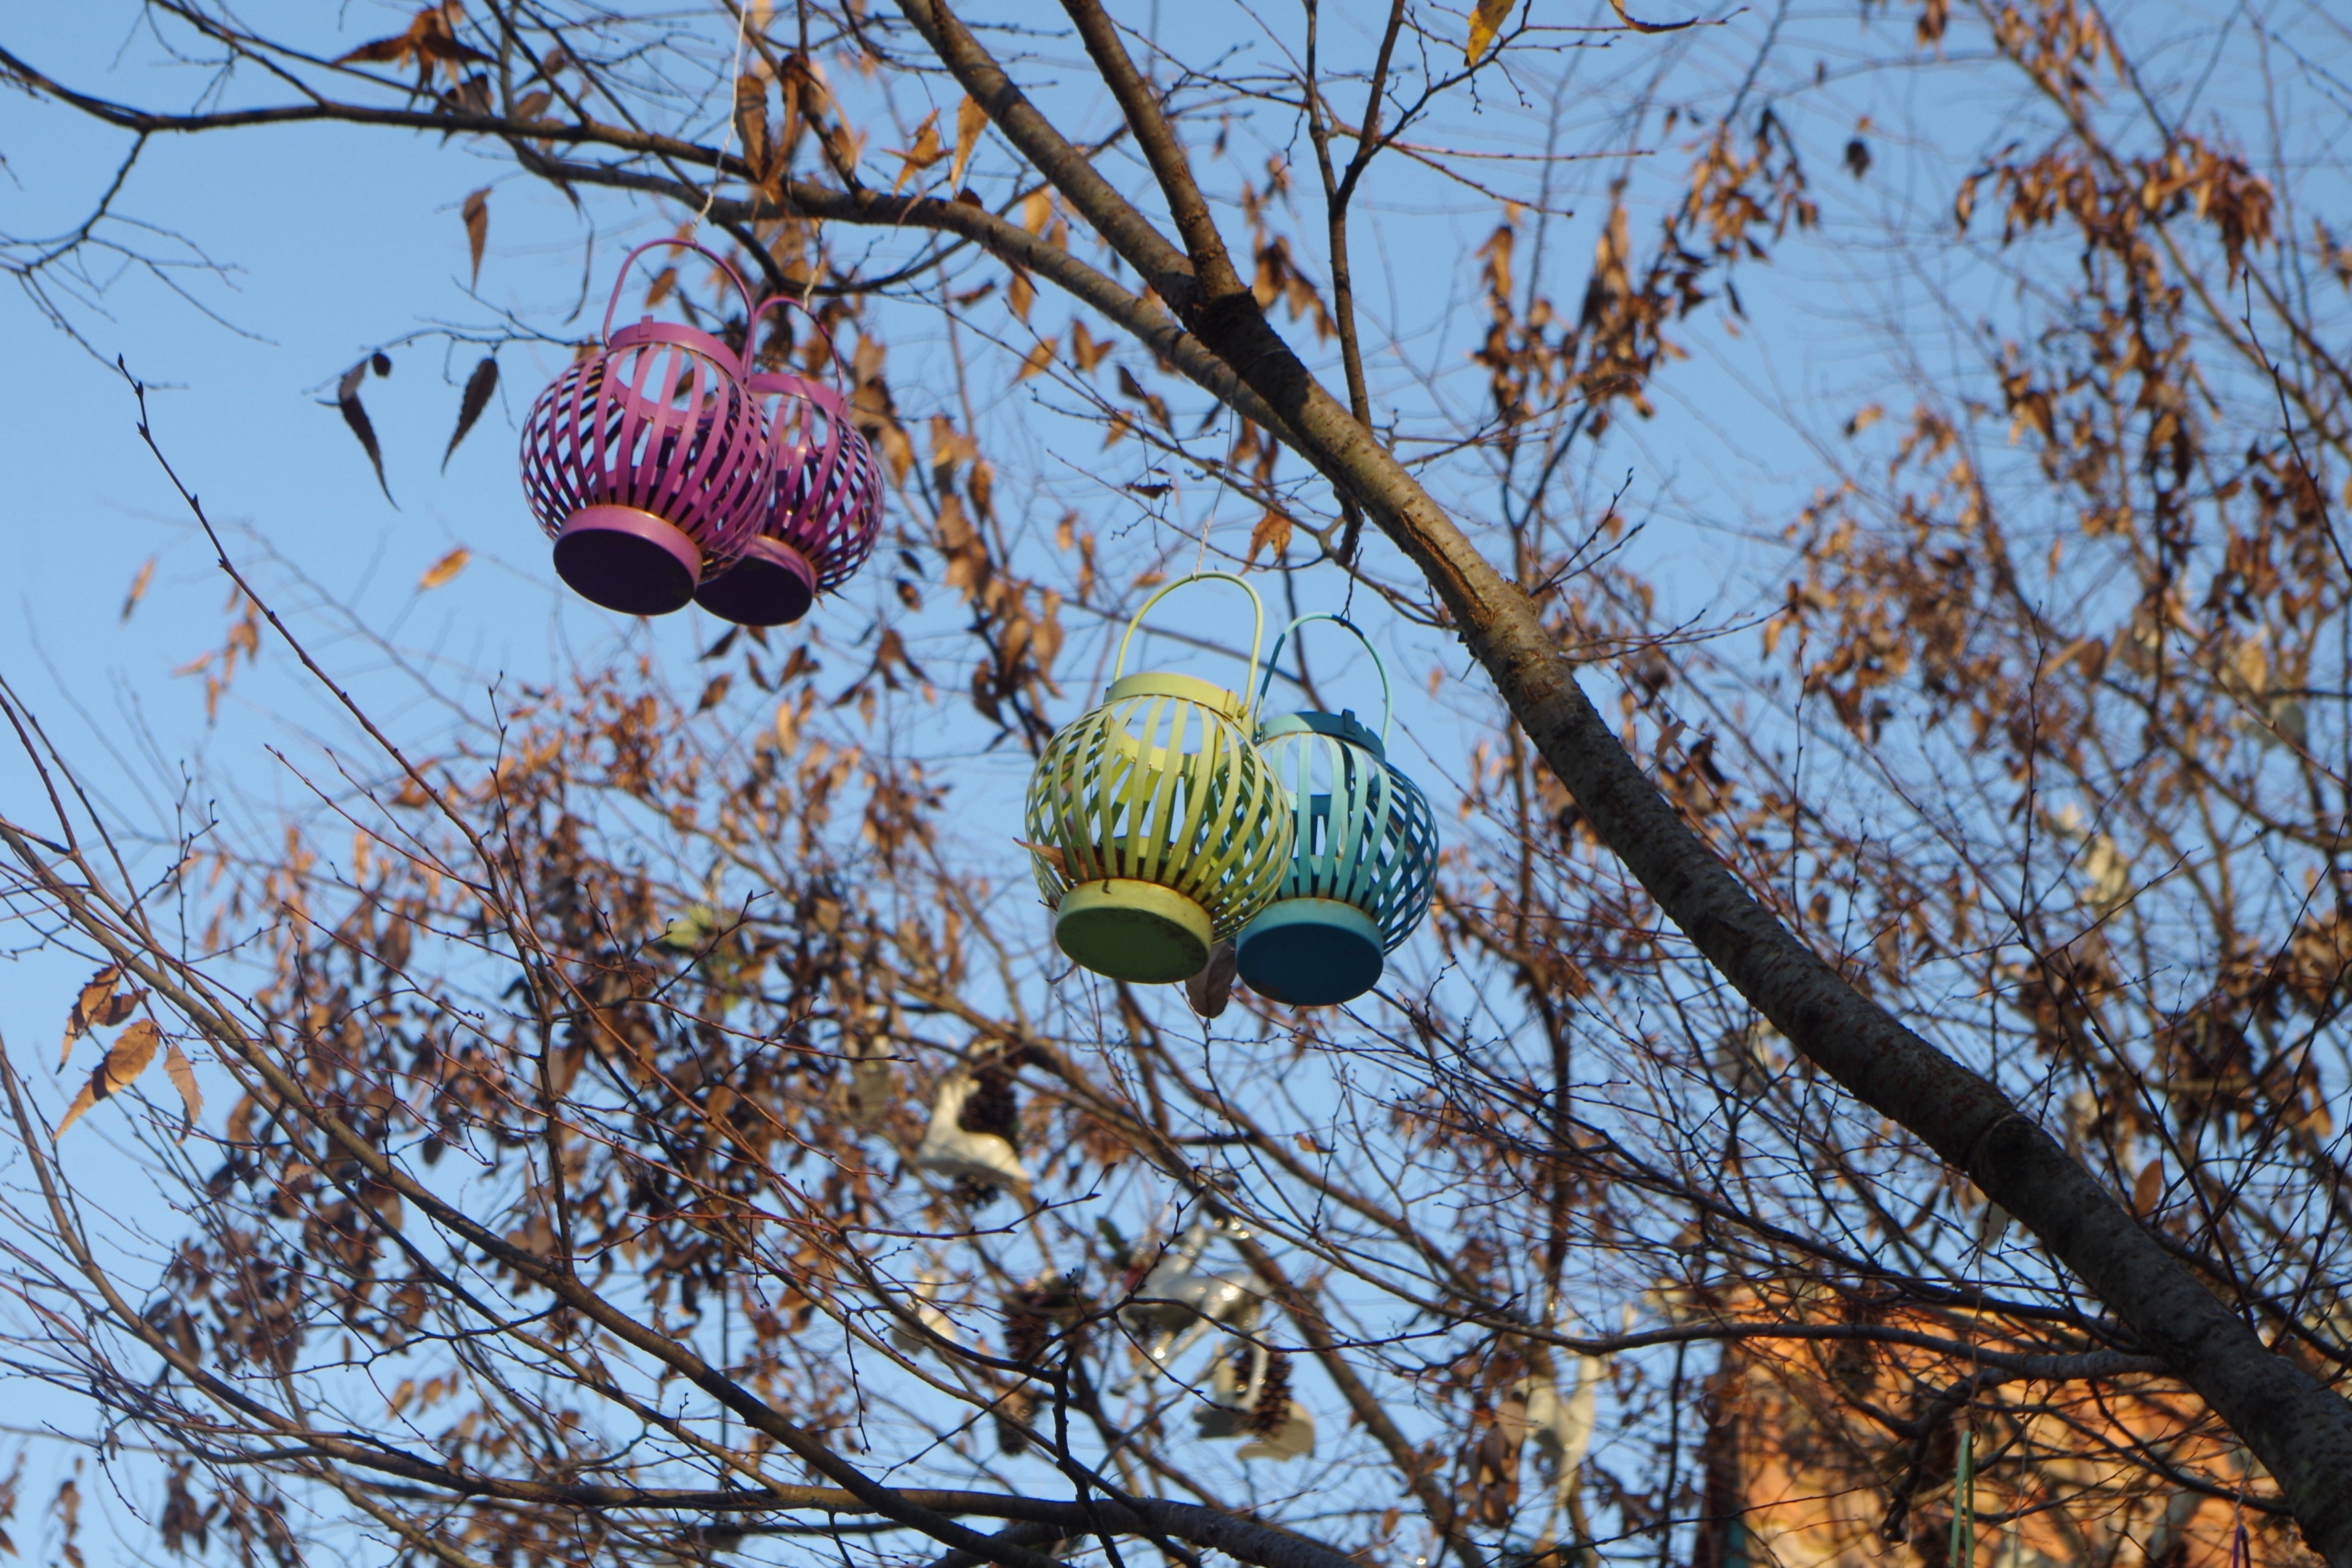 four lanterns hanging on tree branch during daytime